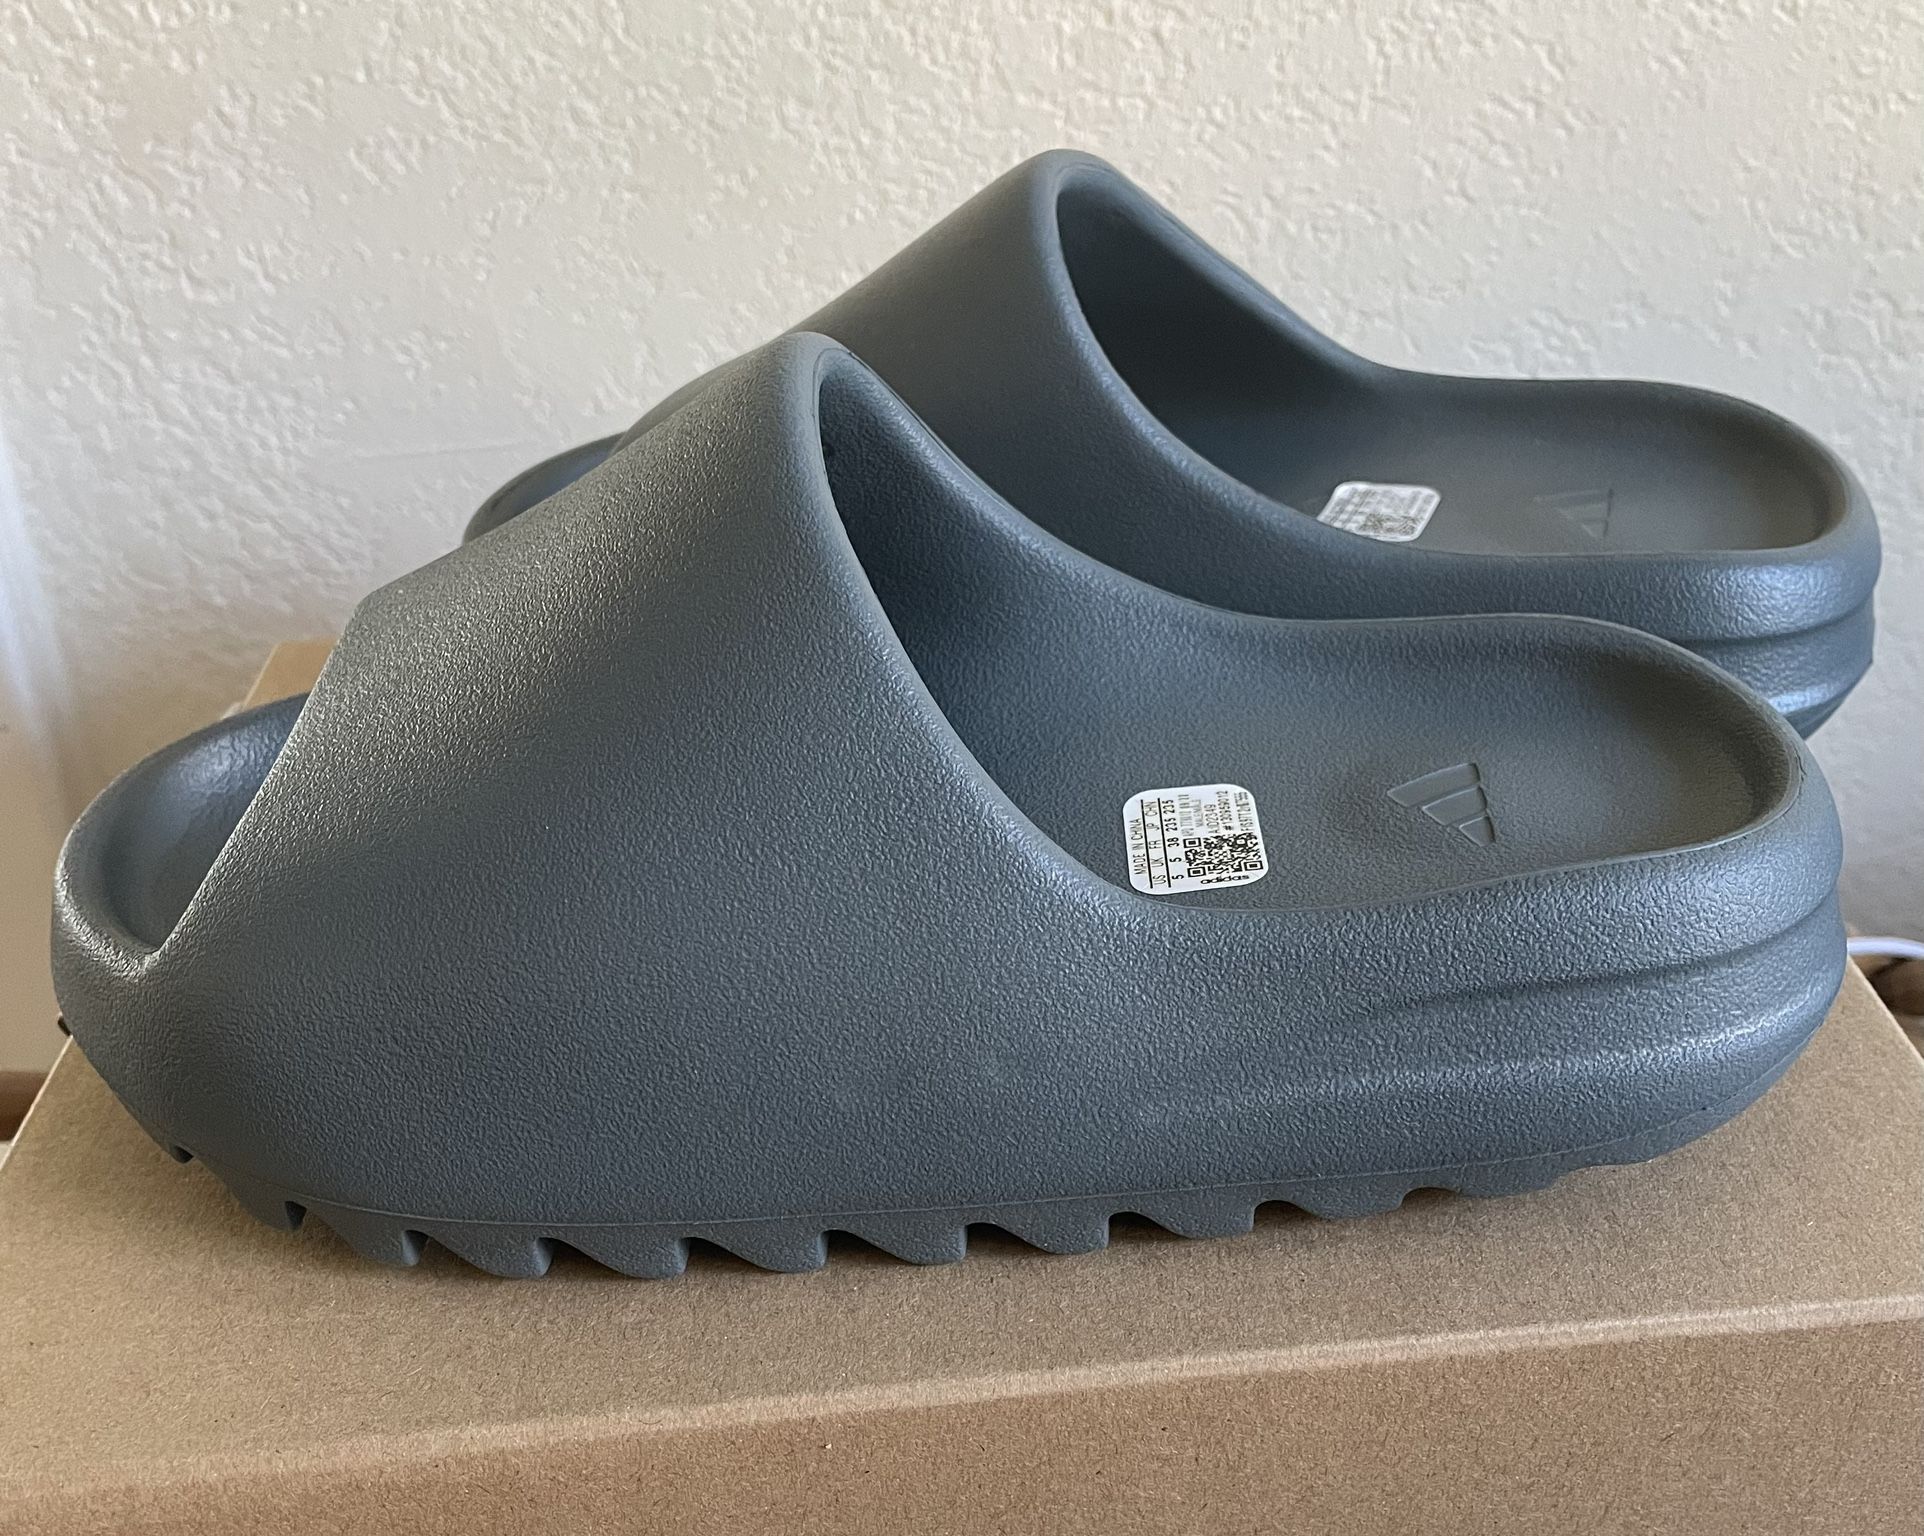 Adidas Yeezy Slides Size 5